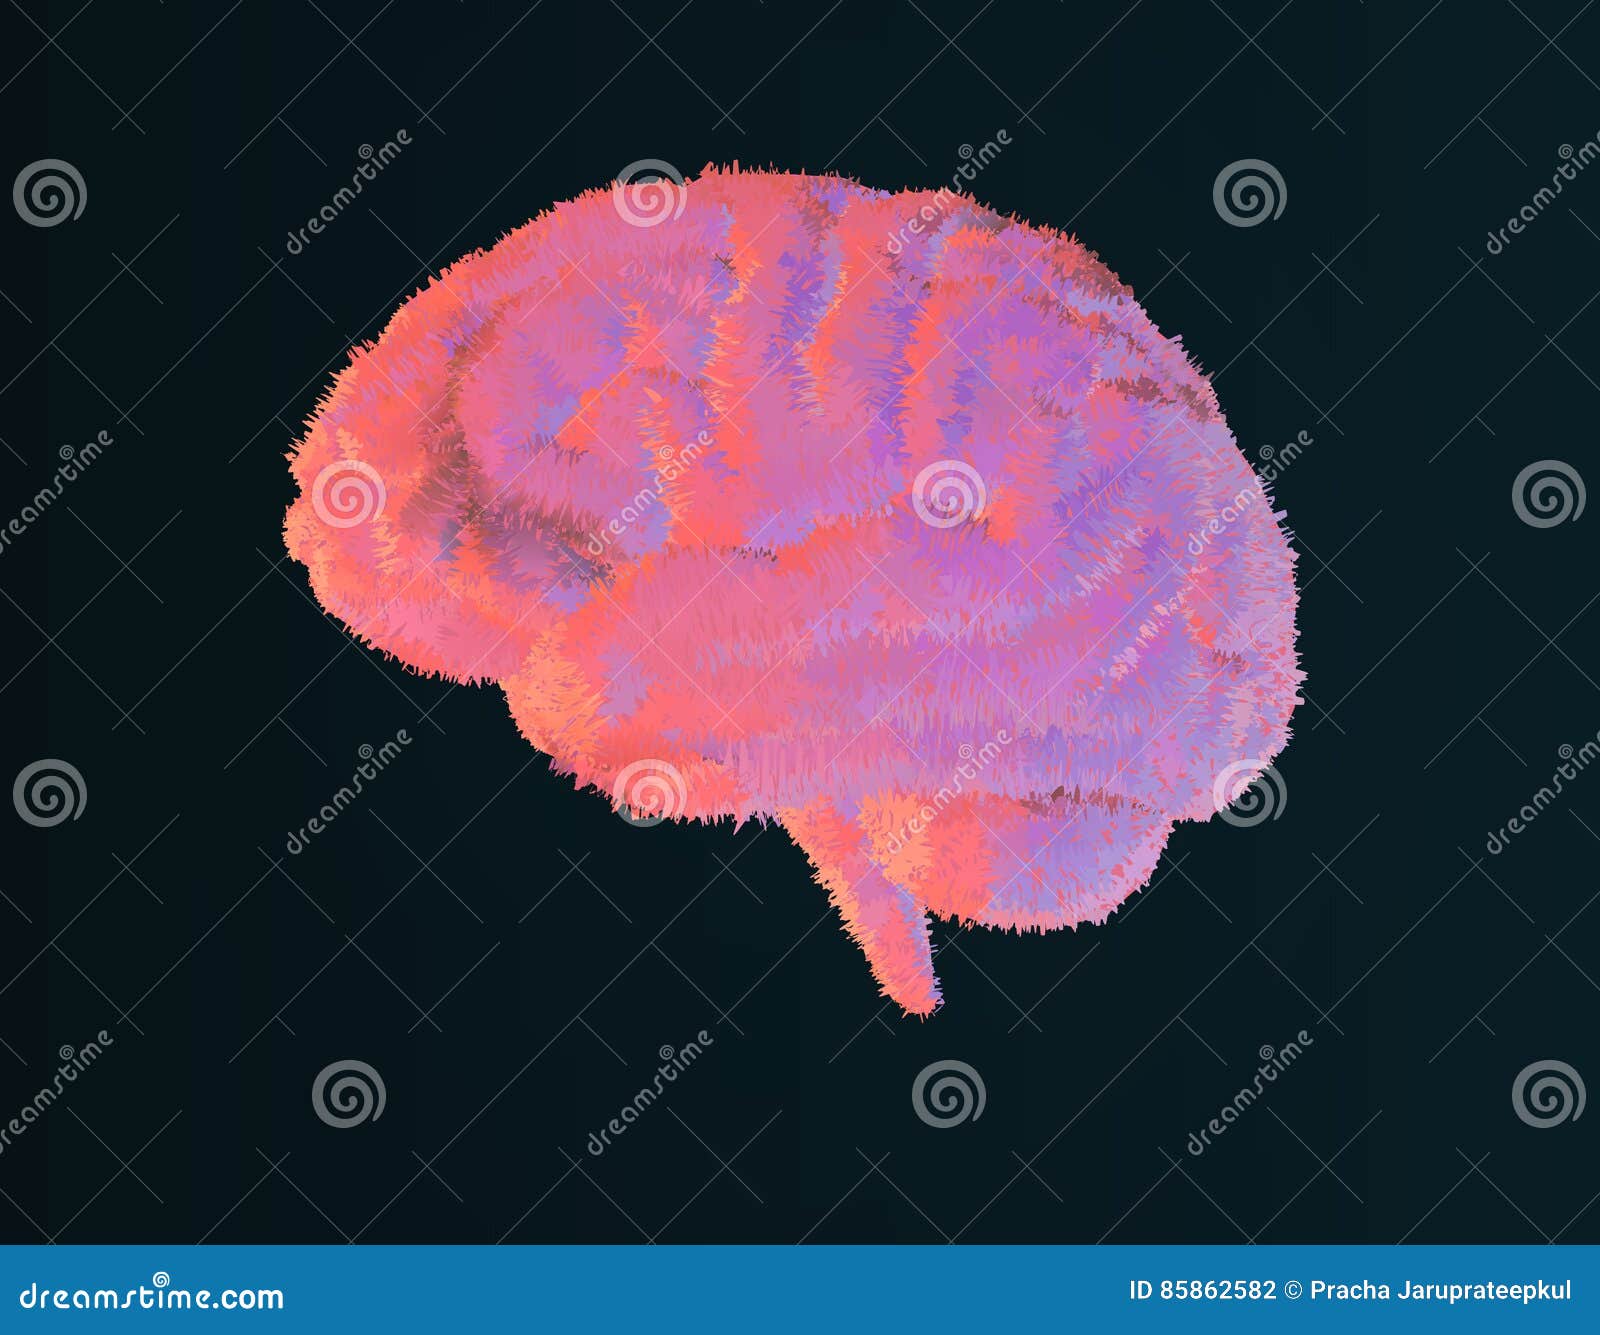 Furry brain illustration on dark background. Furry brain illustration with pastel color style on dark background